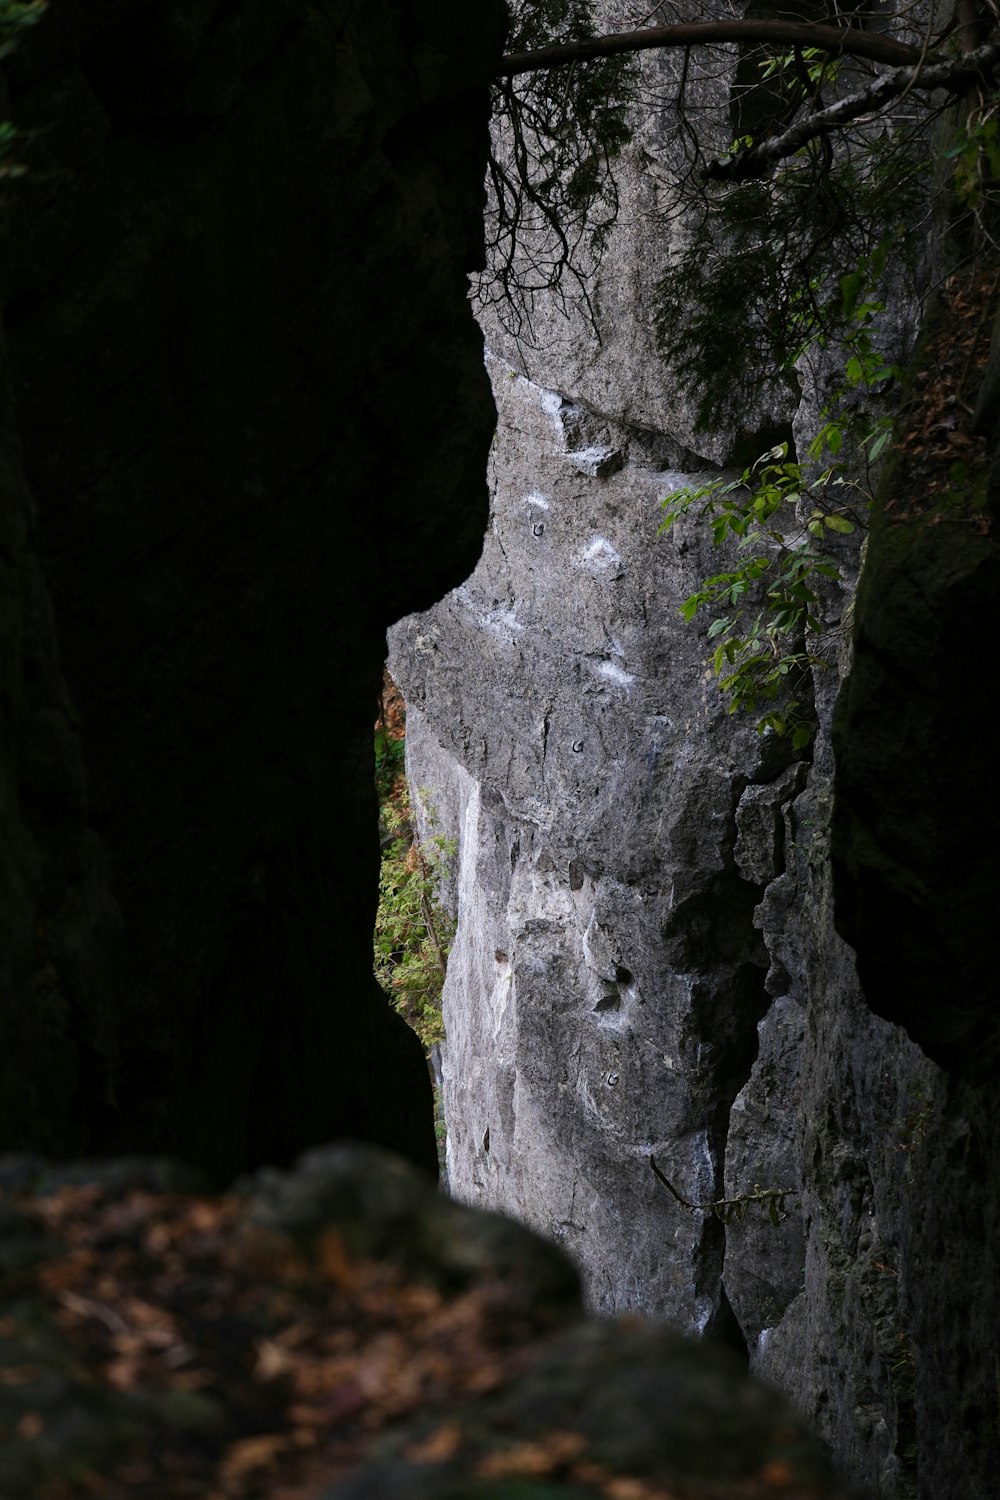 a person climbing up a steep rock face